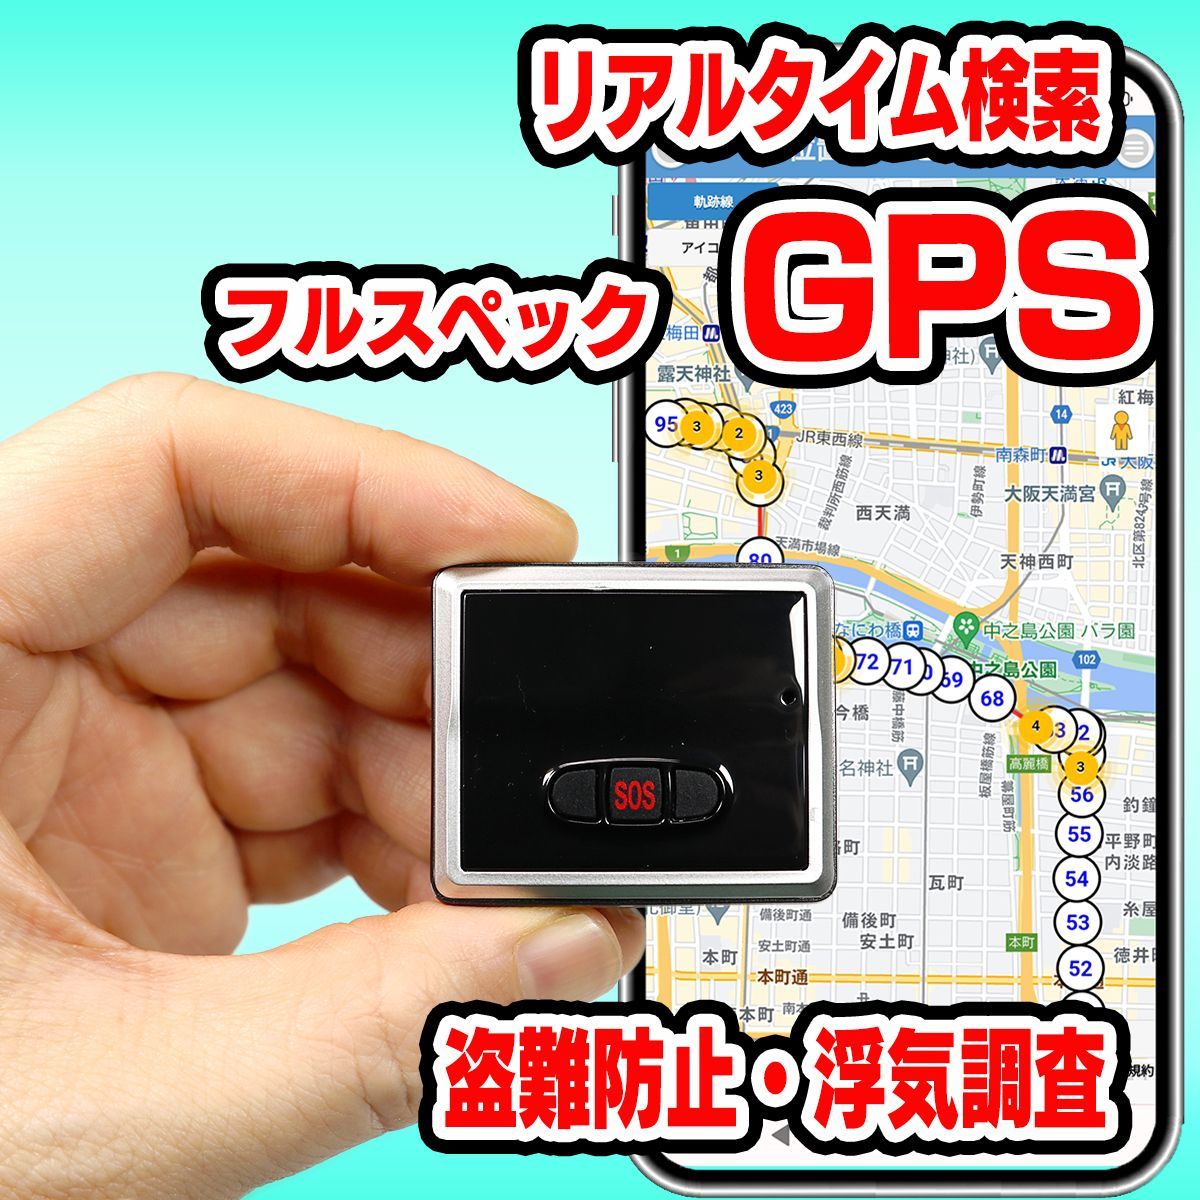 リアルタイムGPS発信機 【trackimo-e】浮気調査 盗難防止 小型GPS フル 